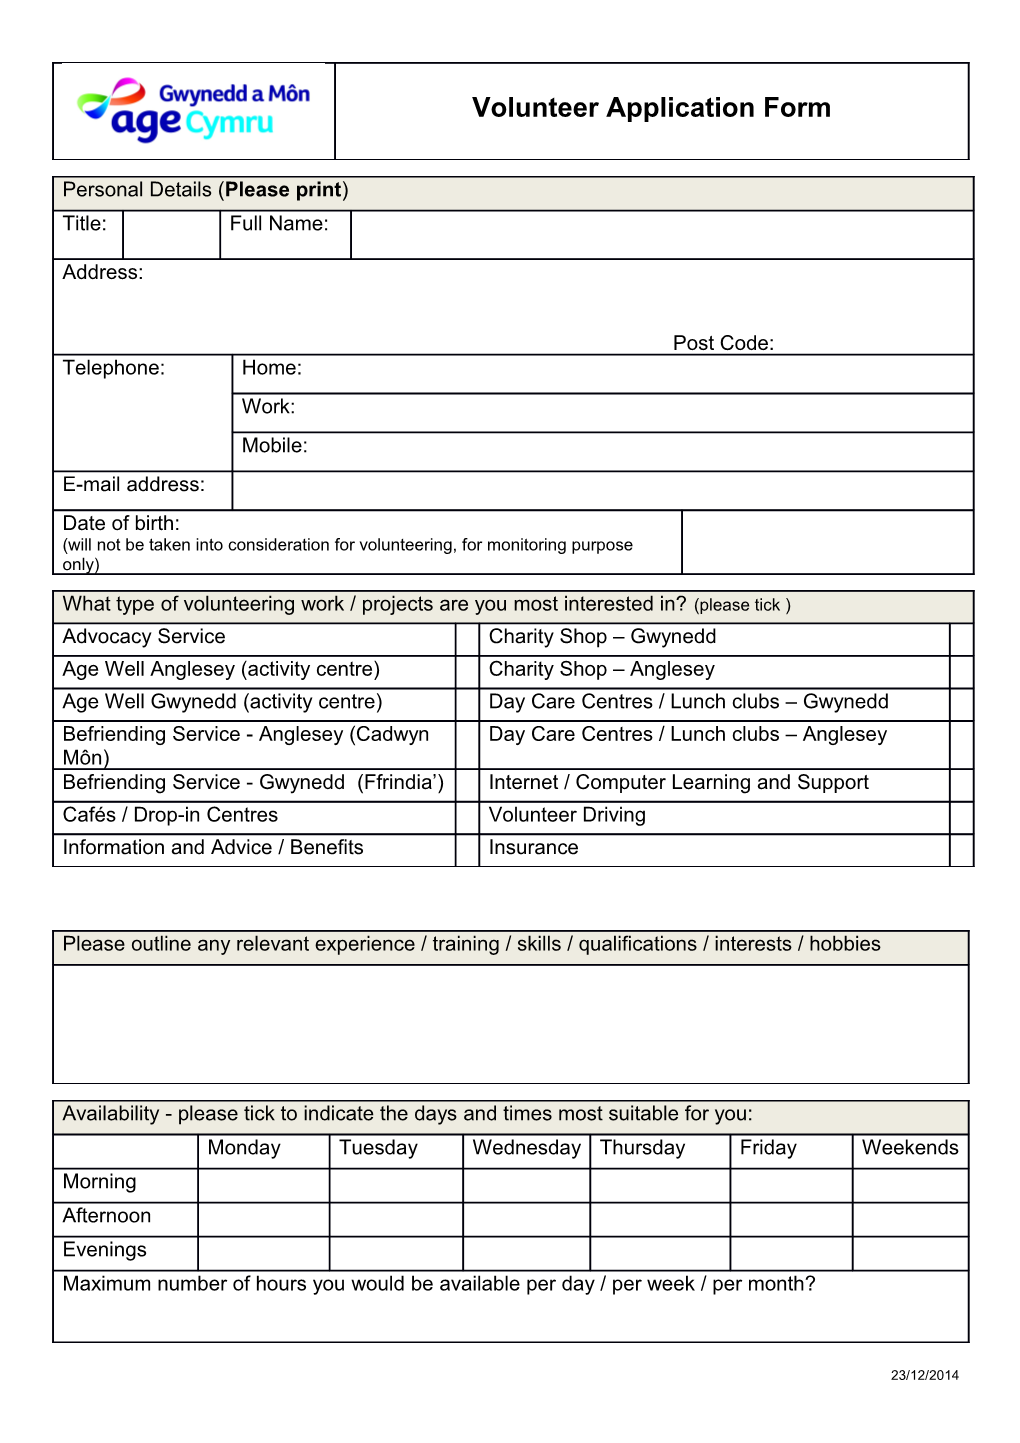 Please Return This Form To:Age Cymru Gwynedd a Môn, 39 Pool St, Caernarfon, Gwynedd LL552AE